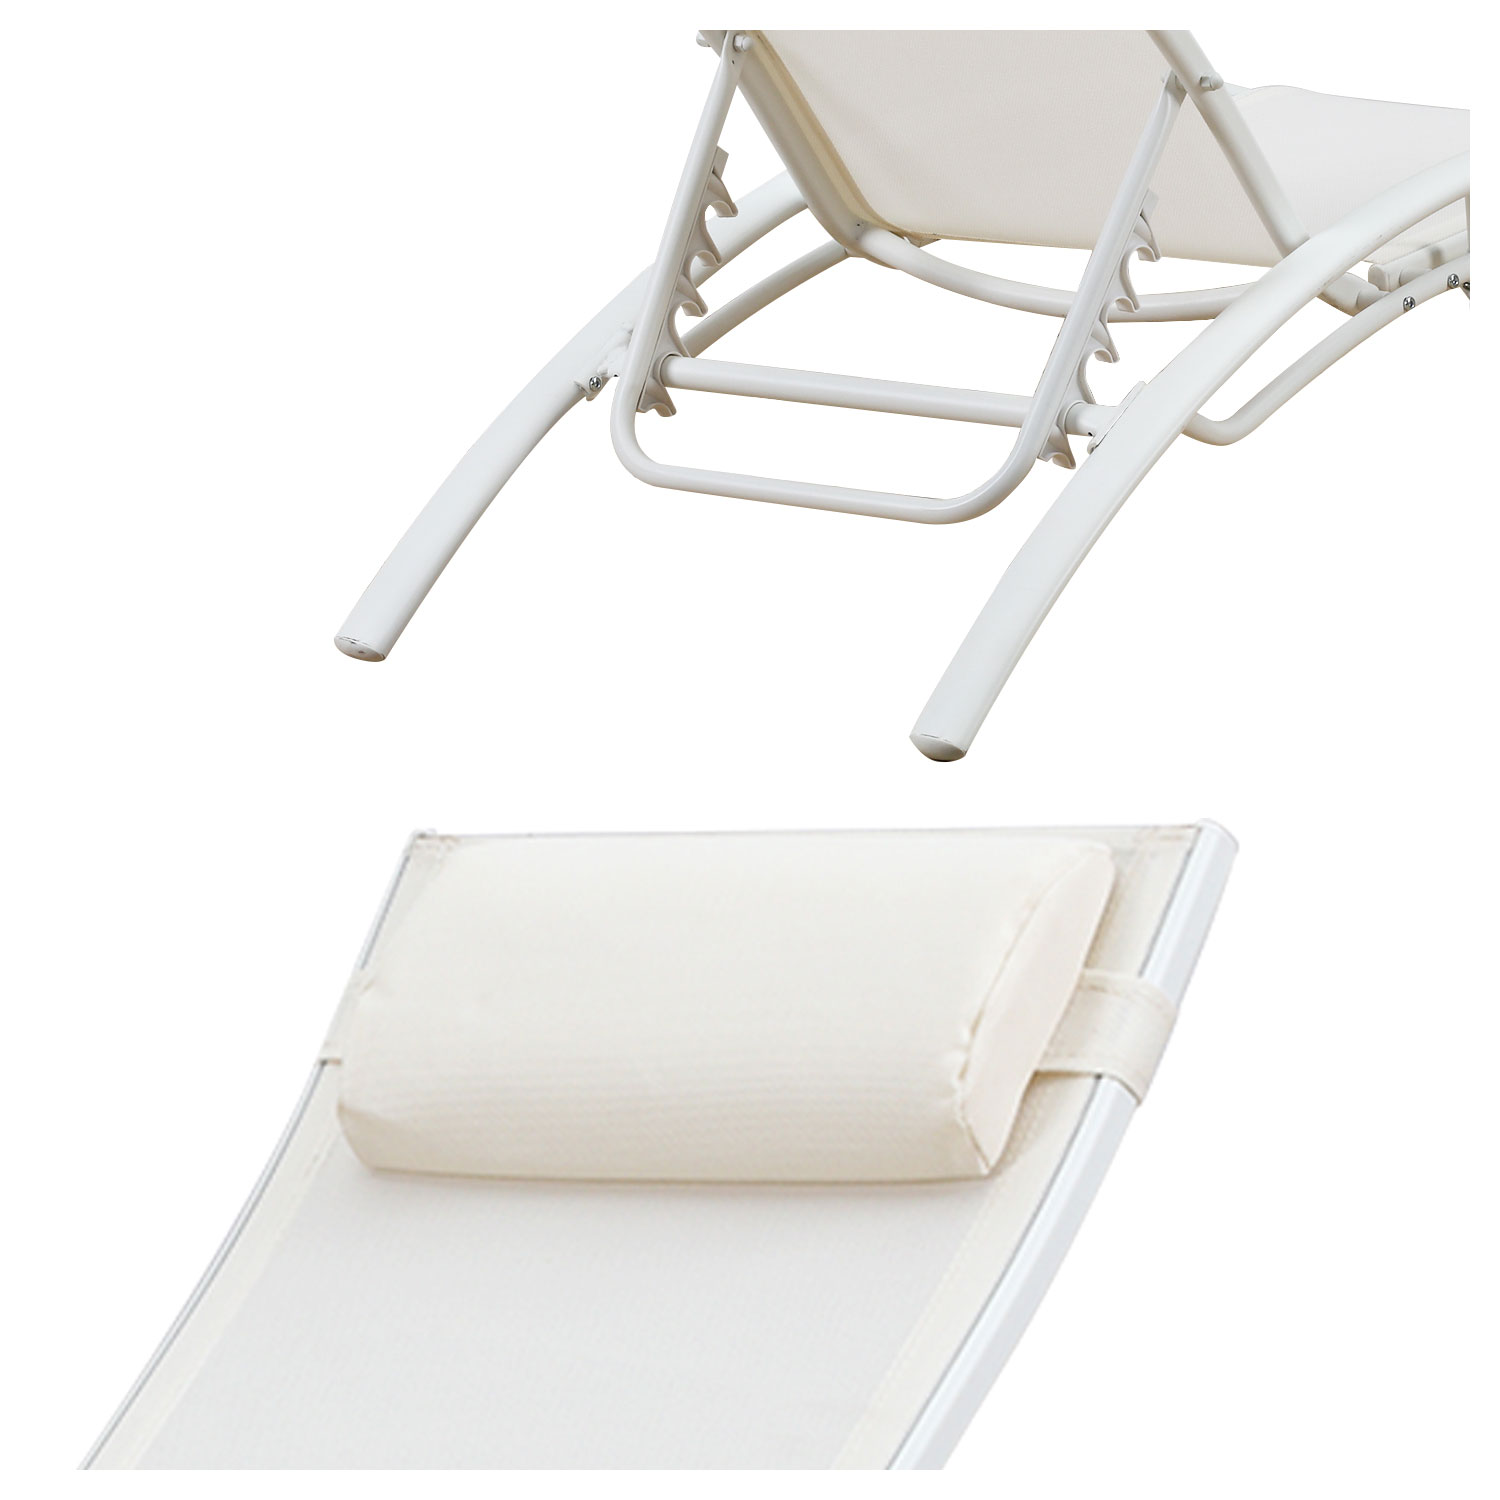 2er-Set Liegestühle GALAPAGOS aus weißem Textilene - weißes Aluminium